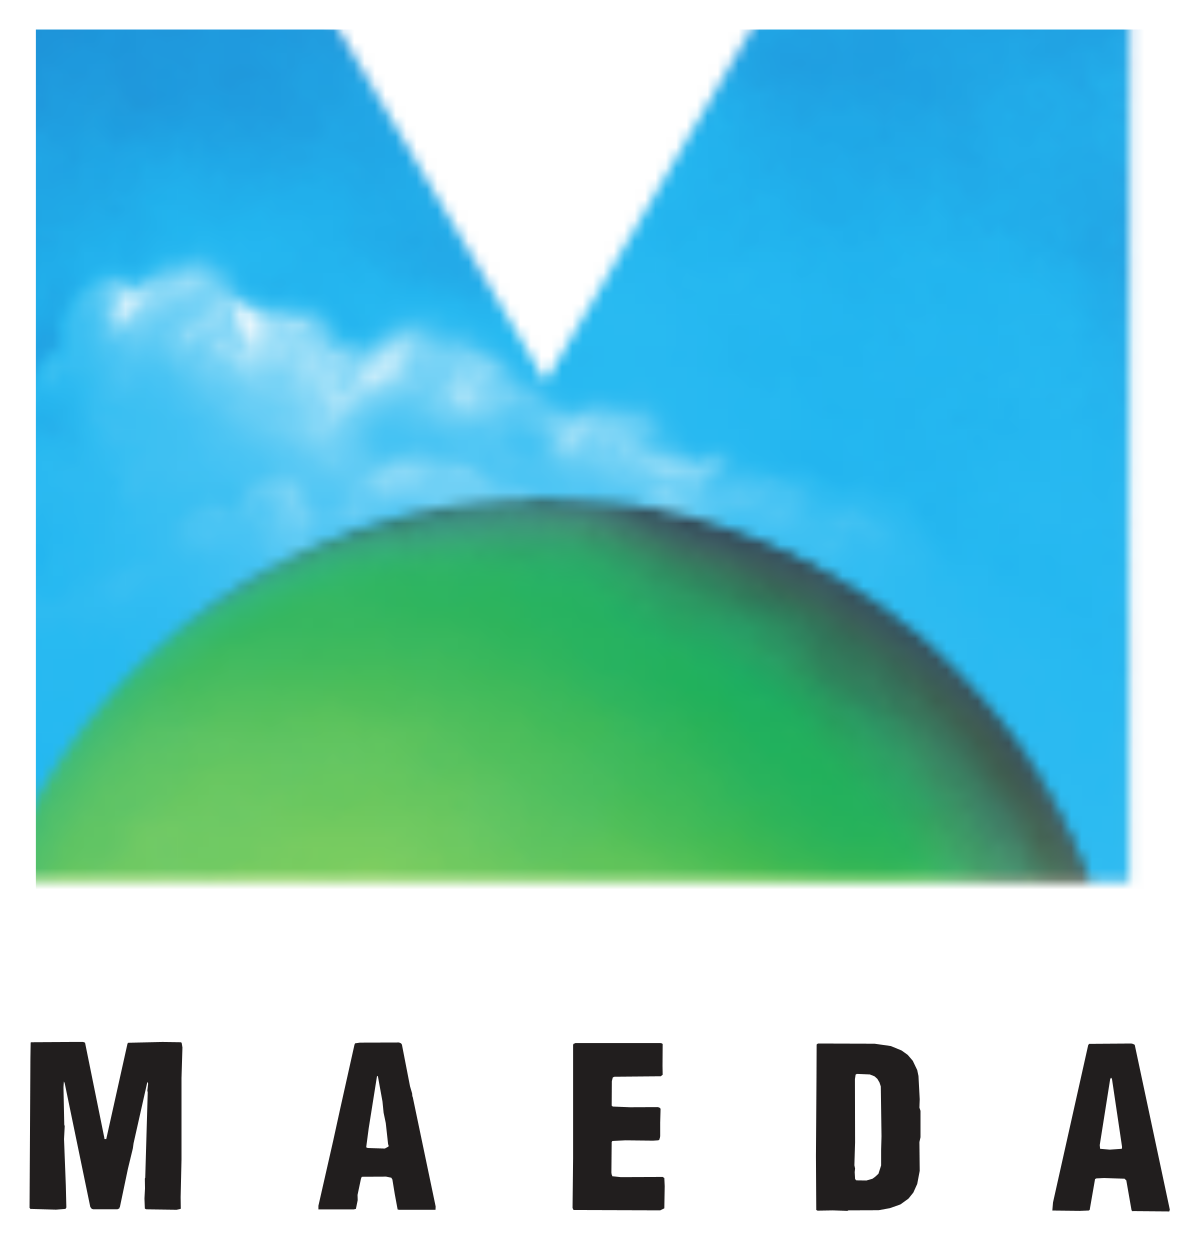 Maeda Corporation - Wikipedia